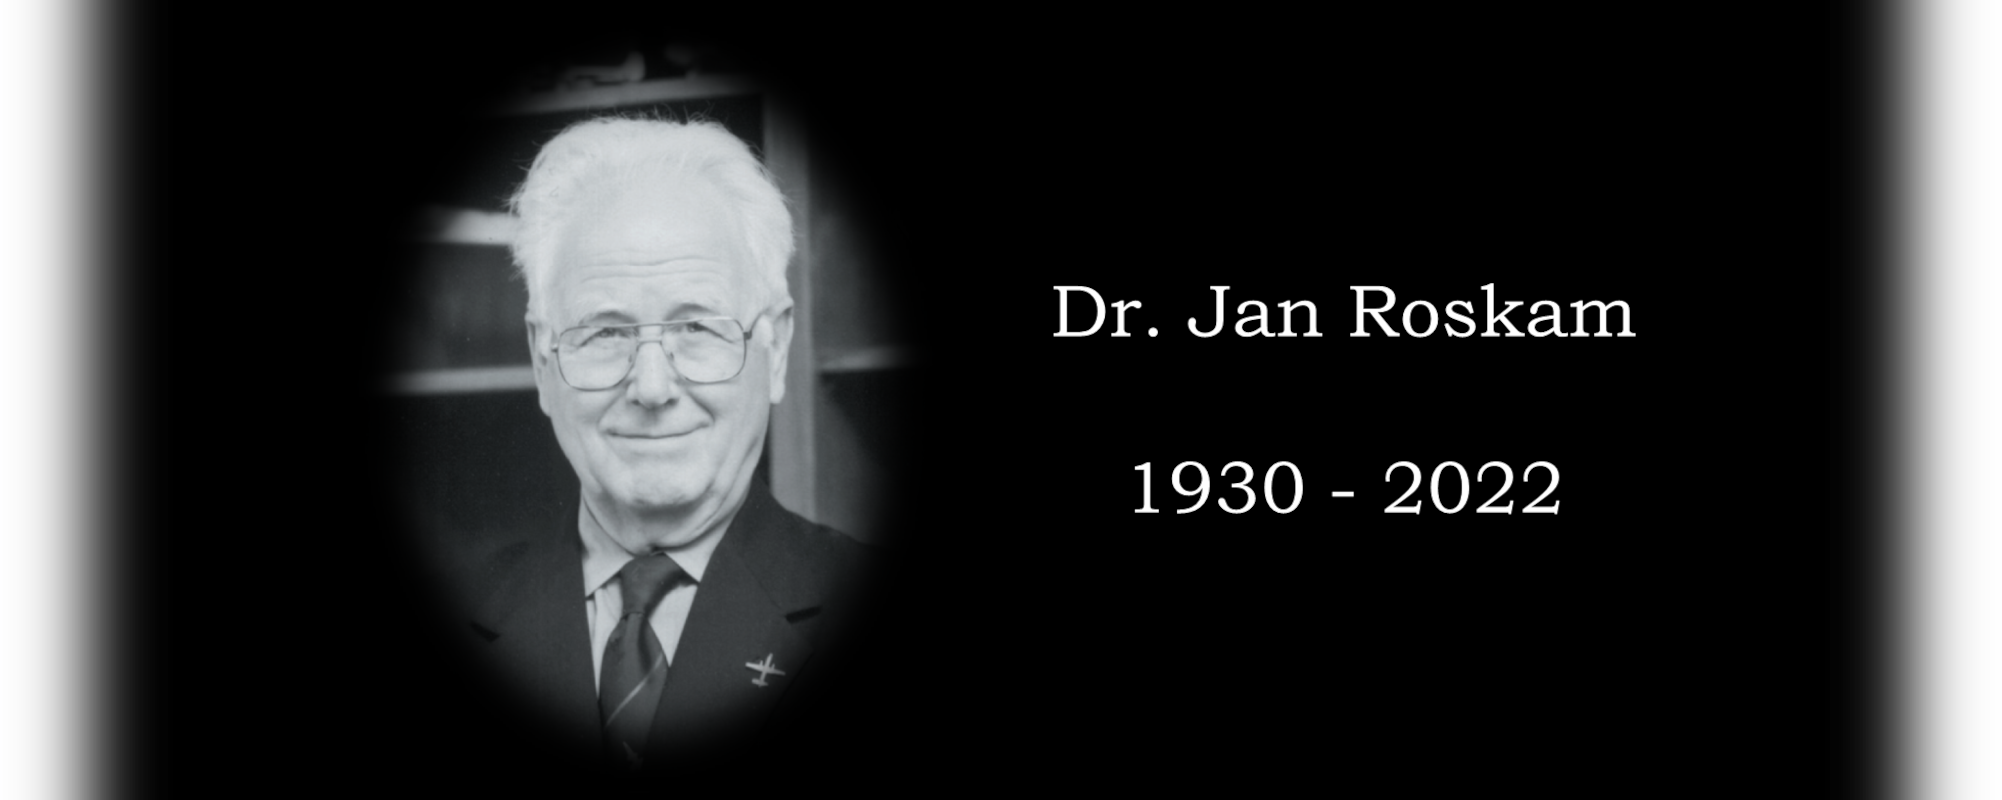 Dr. Roskam 1930-2022